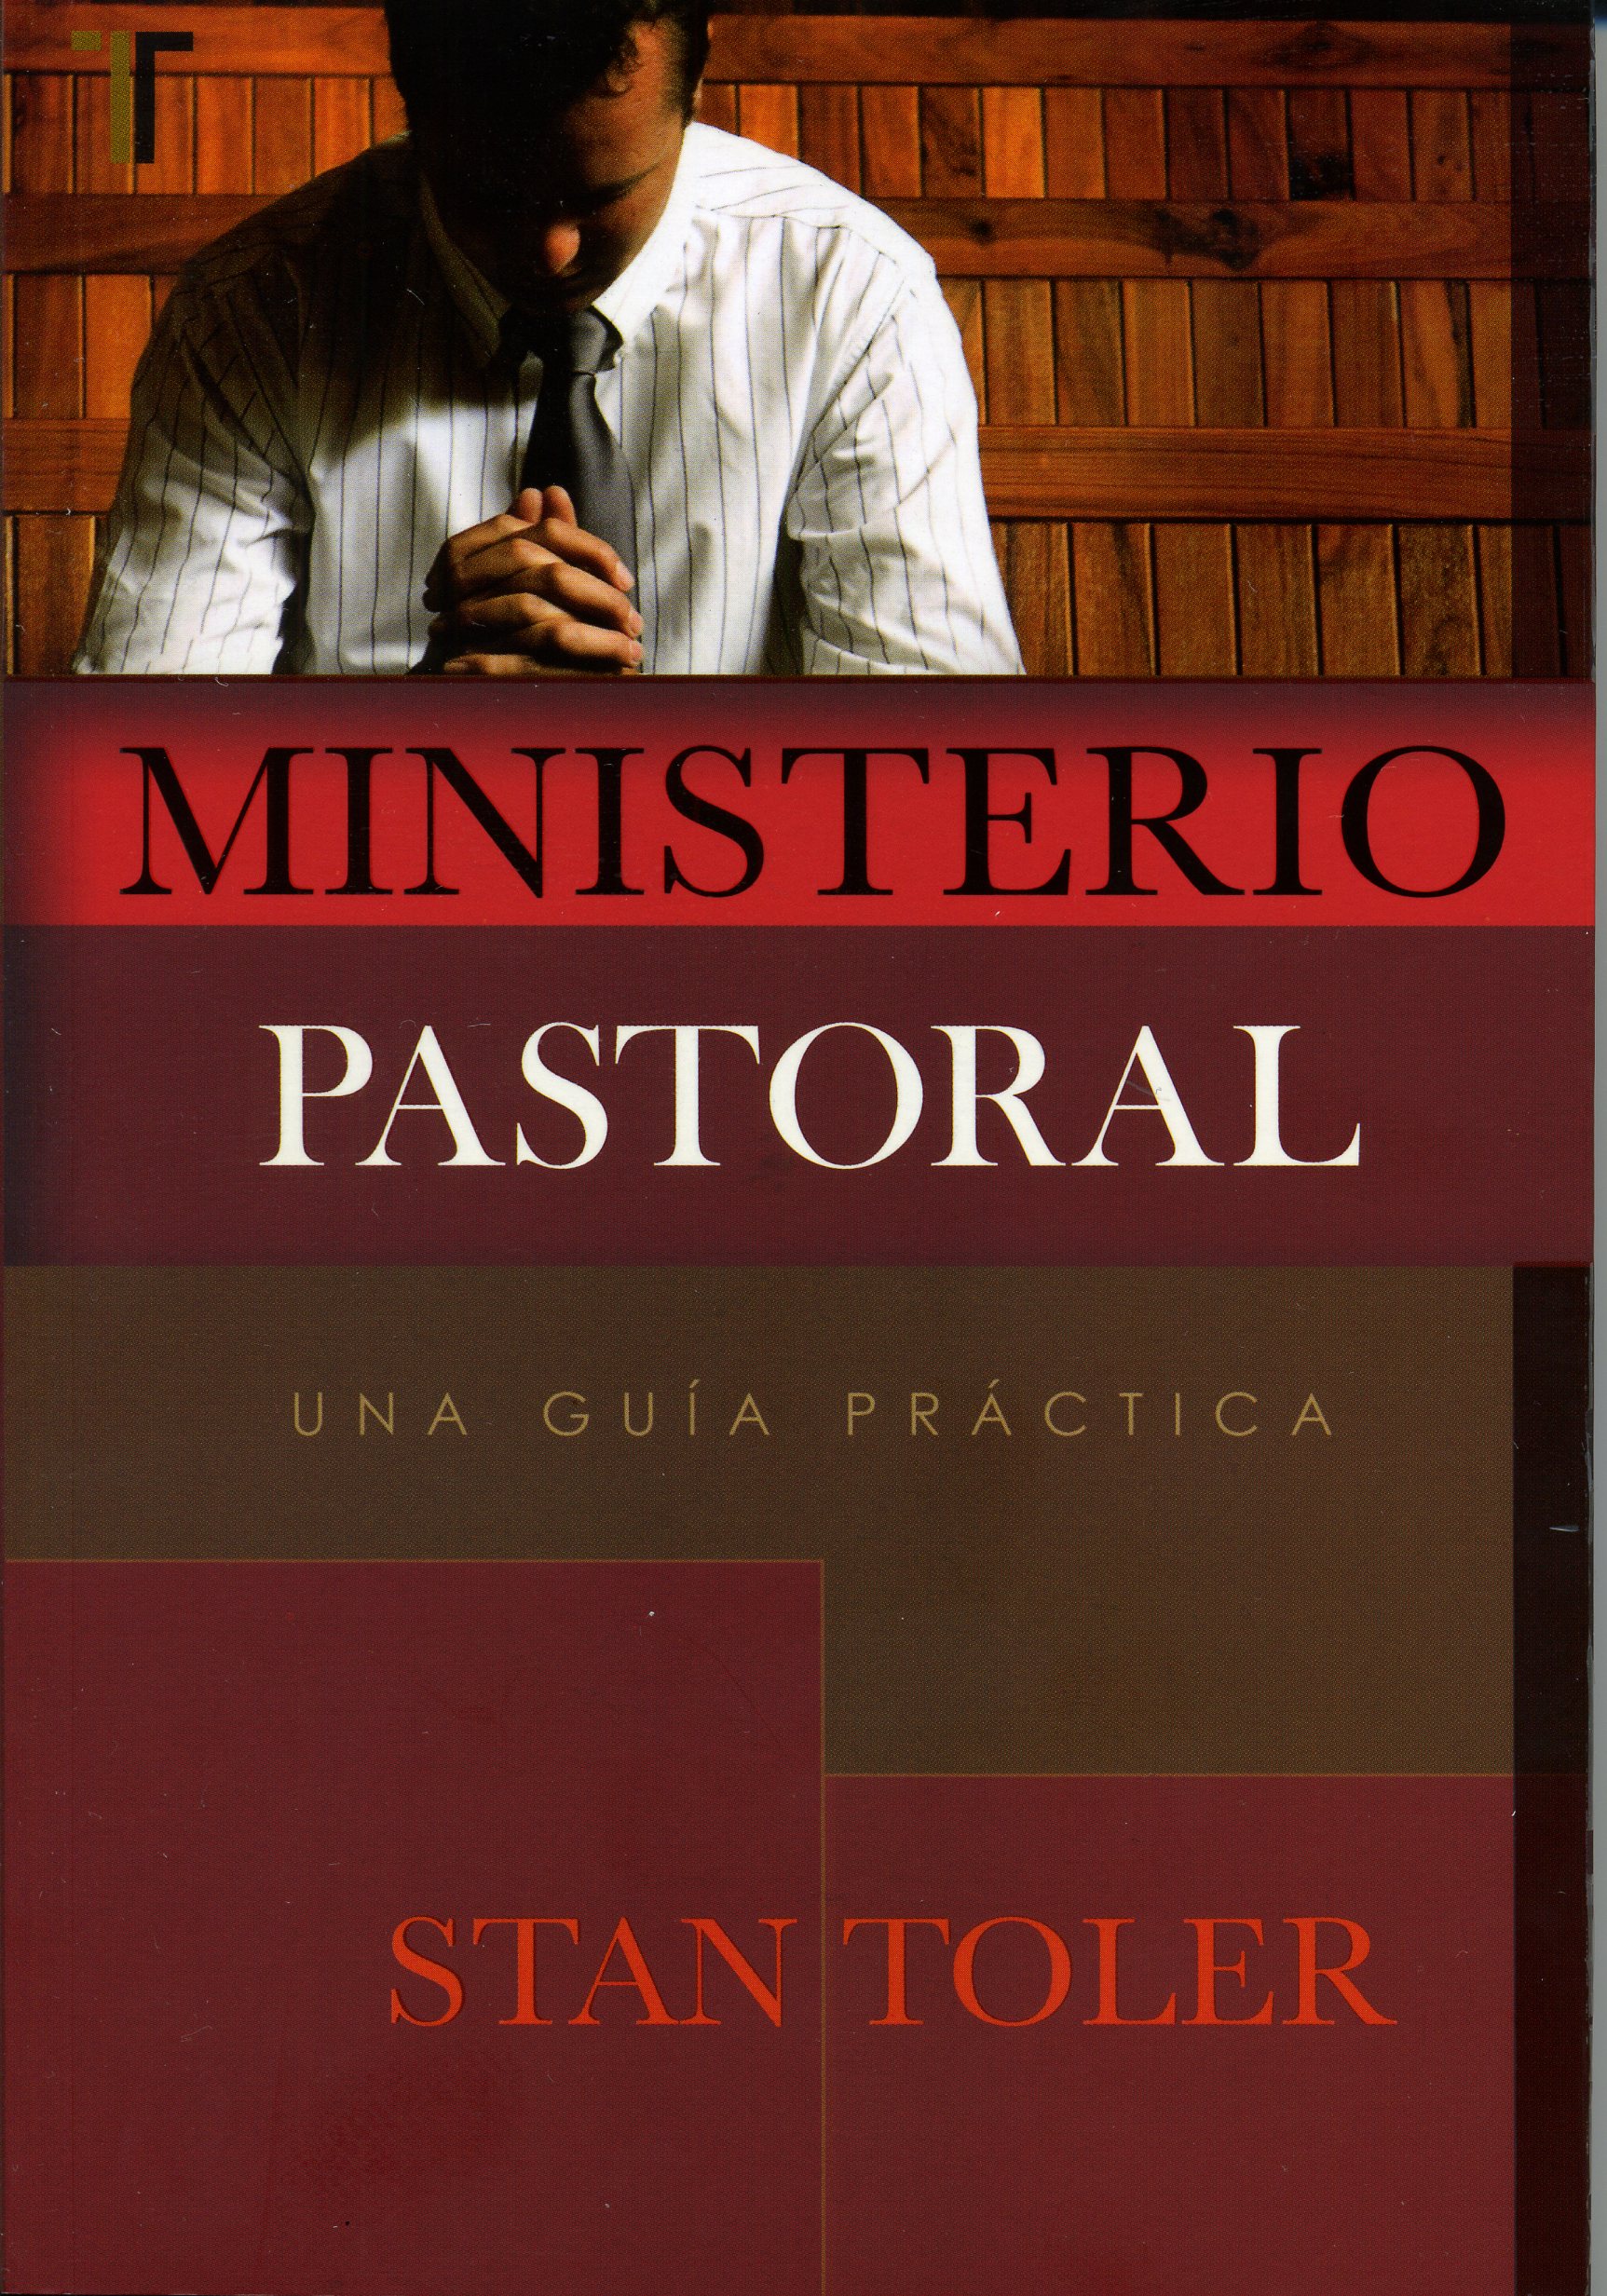 El Ministerio Pastoral